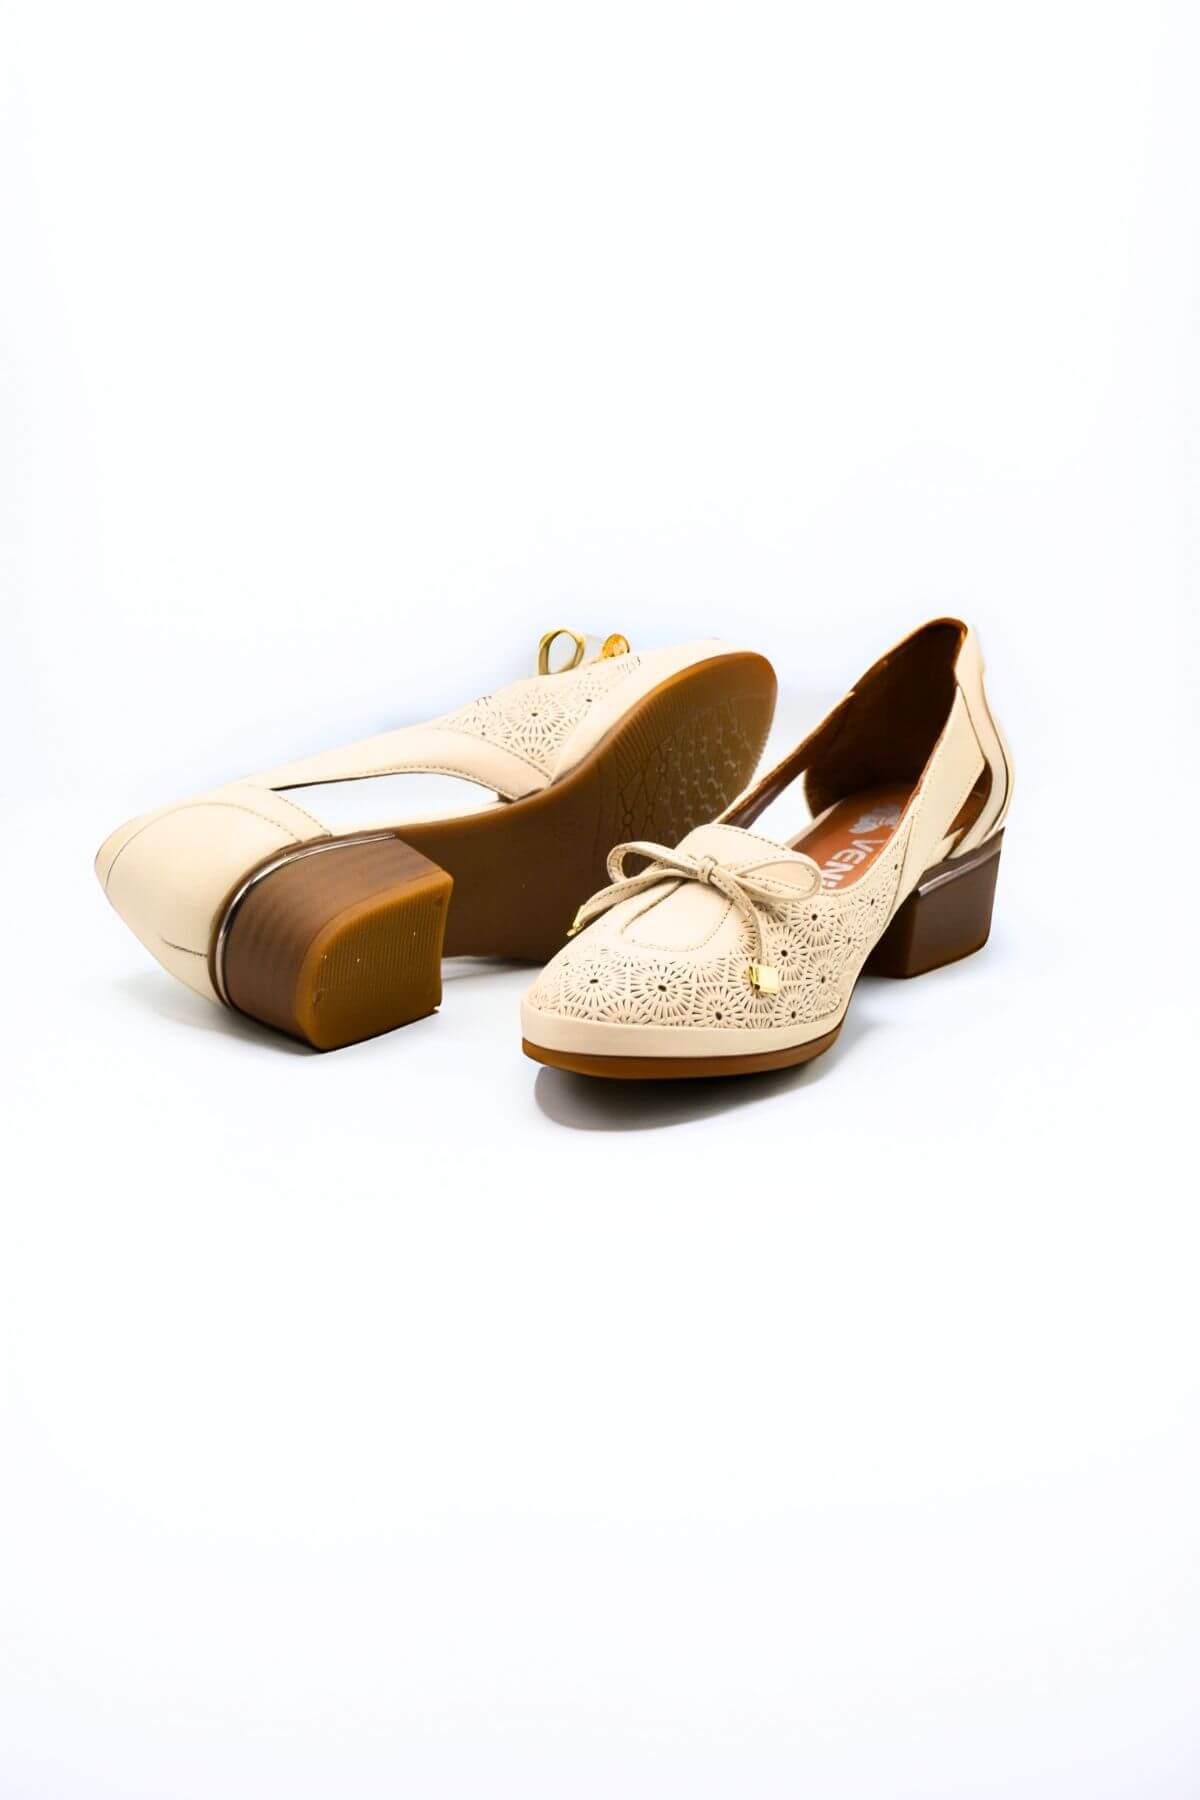 Kadın Topuklu Deri Ayakkabı Bej 2312522Y - Thumbnail